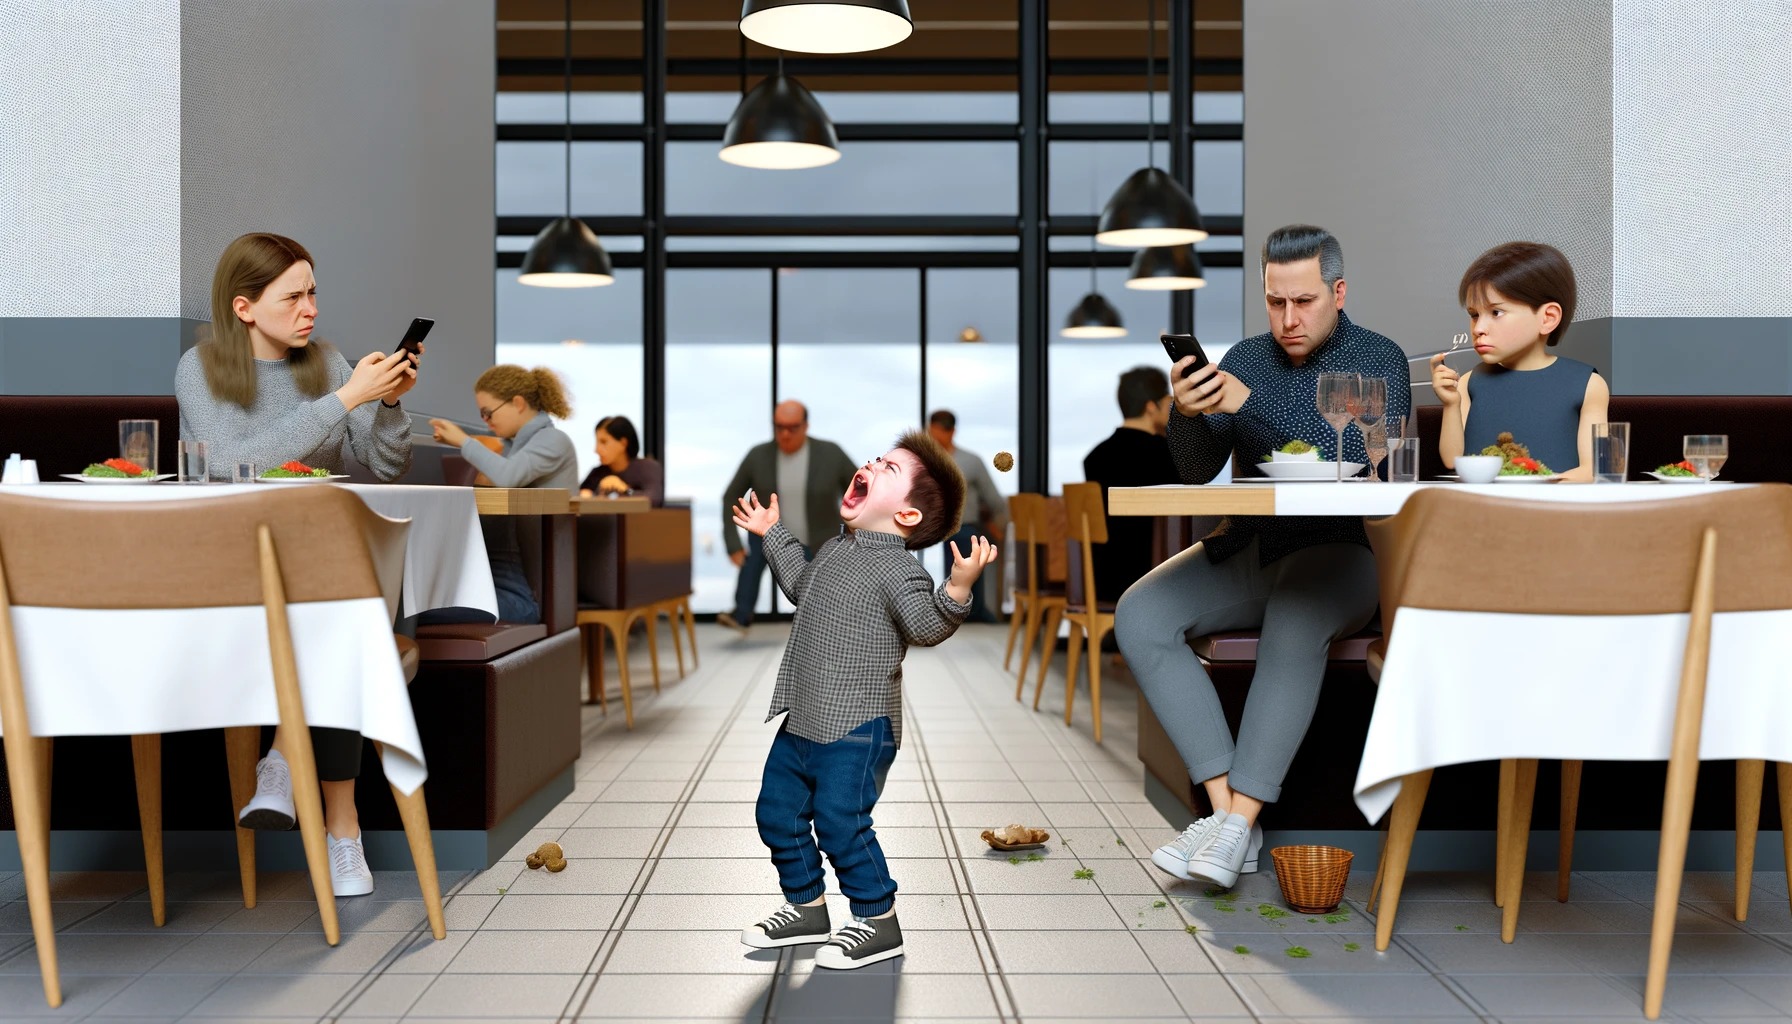 【地獄】飲食店で奇声を上げ料理投げる子ども、スマホ見て注意しない親、店主の本音「出禁にしたい」